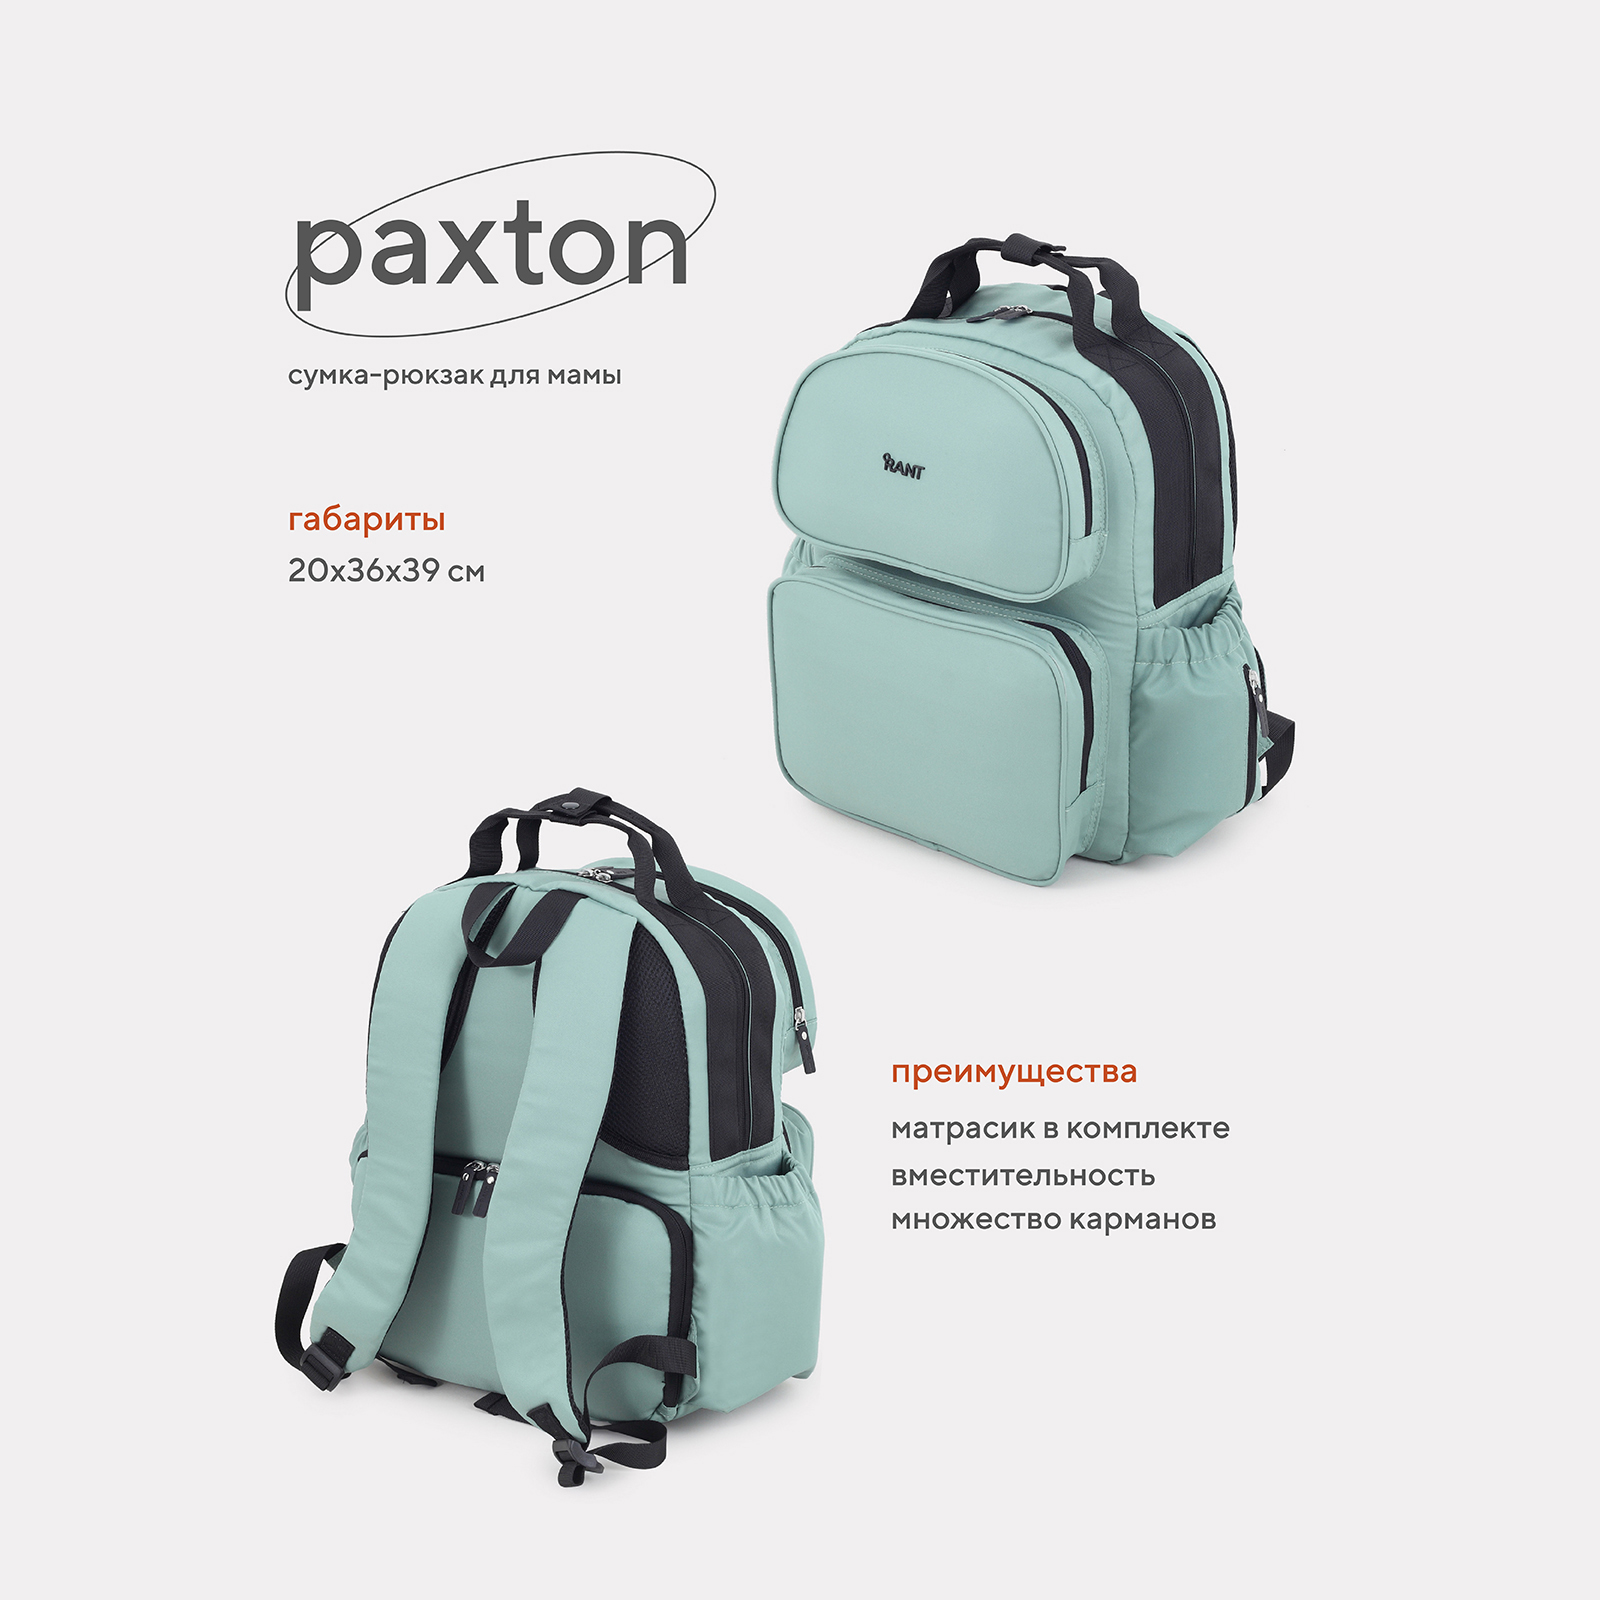 Сумка-рюкзак для мамы RANT Paxton RB008 Green сумка пеленальник elodie pebble green